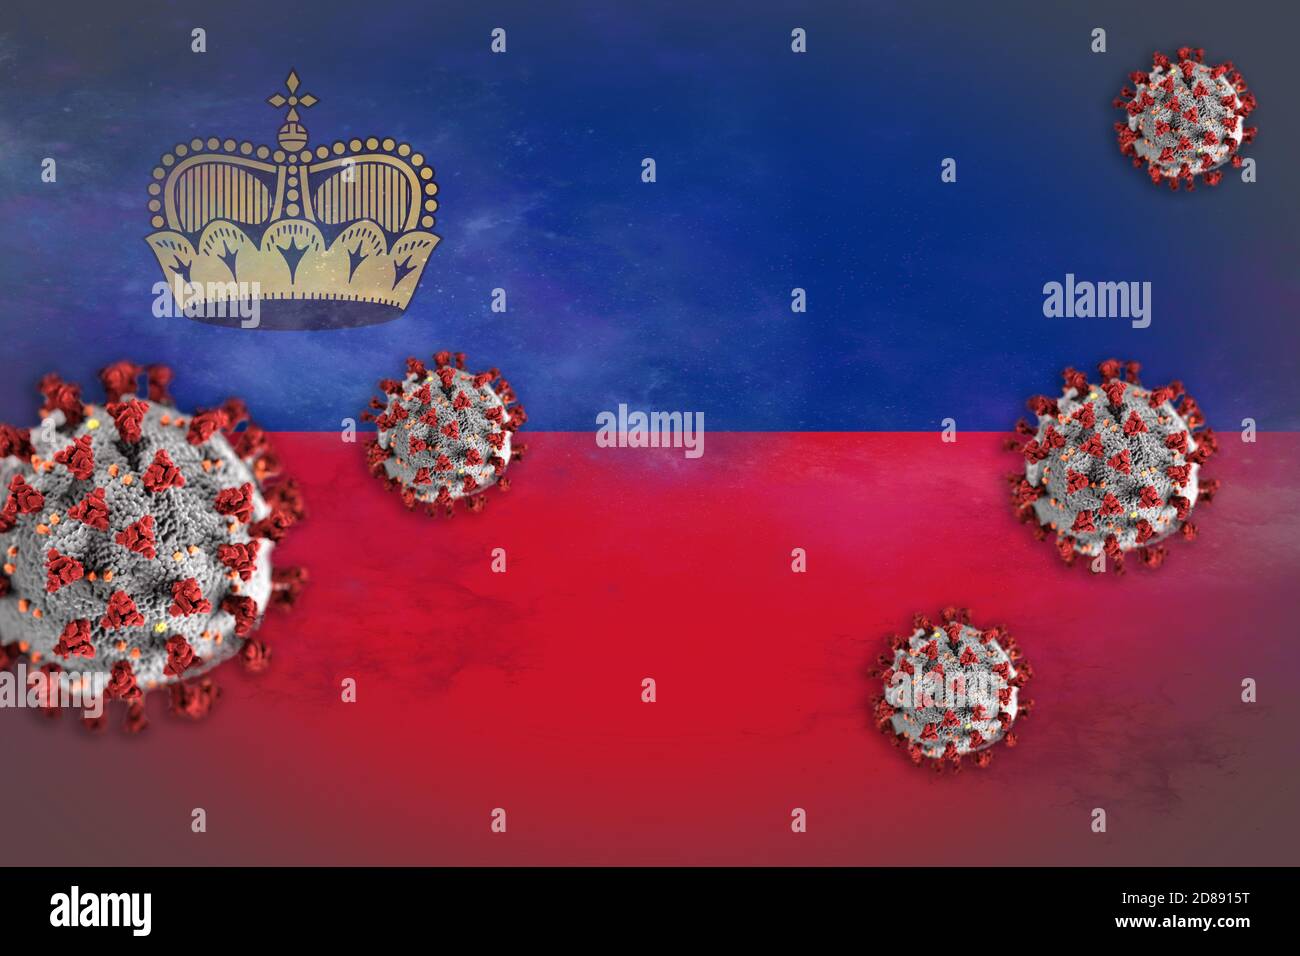 Konzeptdarstellung von Coronavirus oder Covid-19-Partikeln, die die Flagge Lichtensteins überschatteten, die den Ausbruch symbolisieren. Stockfoto